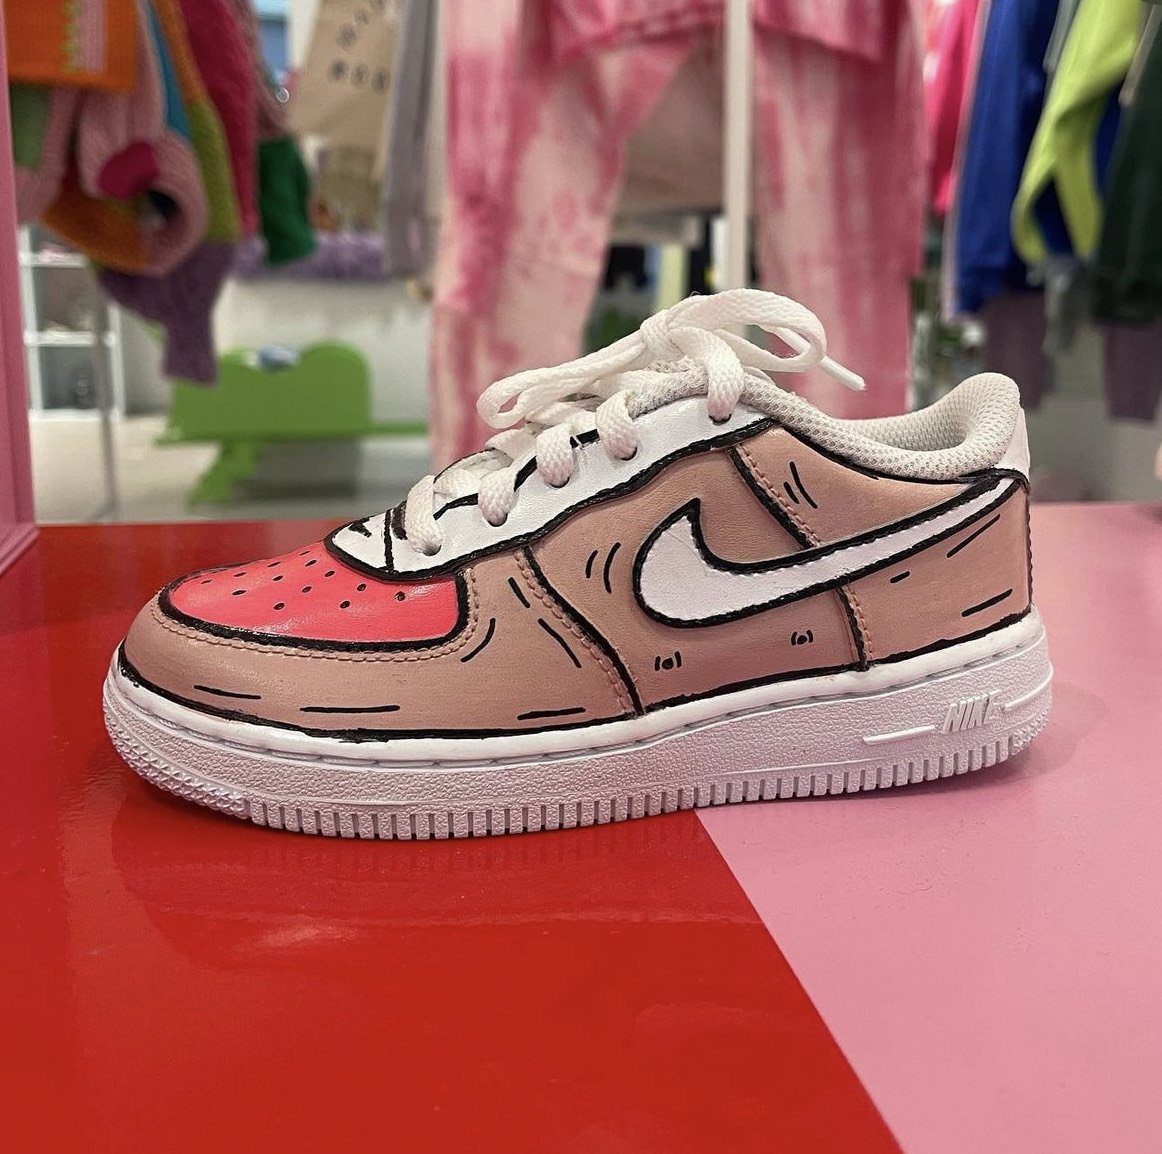 Nike Black Air Forces Cartoon  Painted shoes diy, Custom sneakers diy, Diy  shoes